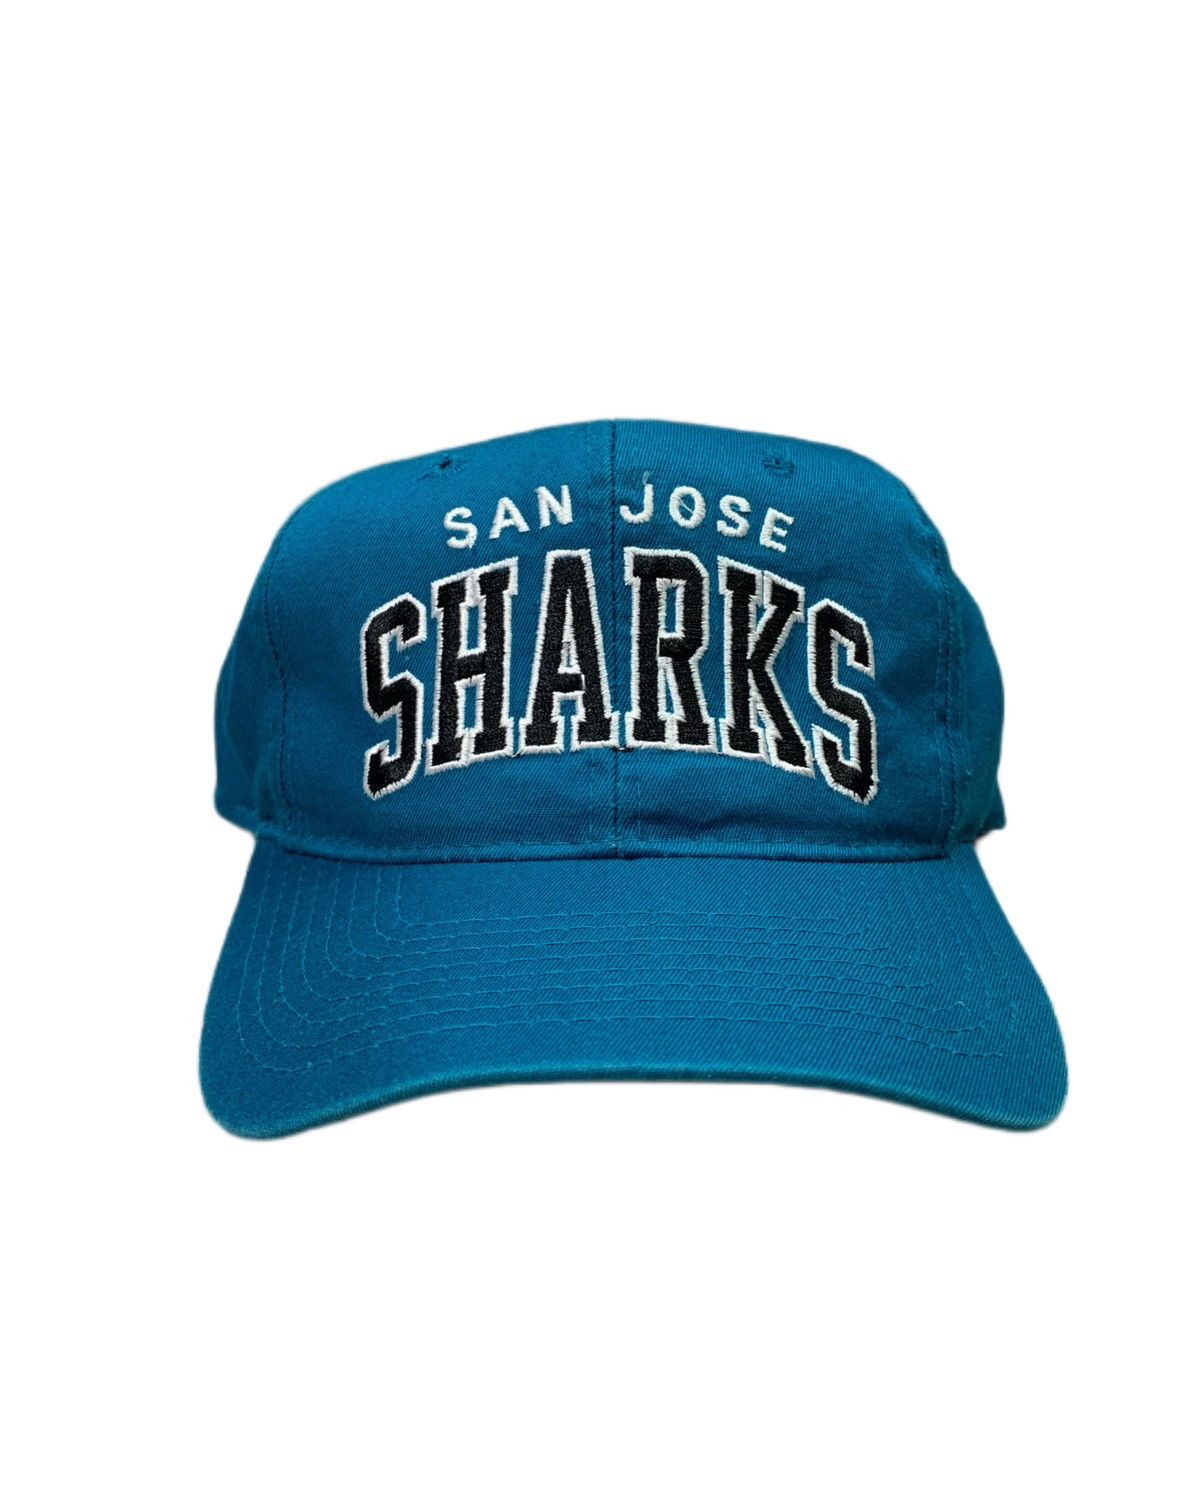 Vintage Snapback Snap Back Hat San Jose Sharks Starter Underscore